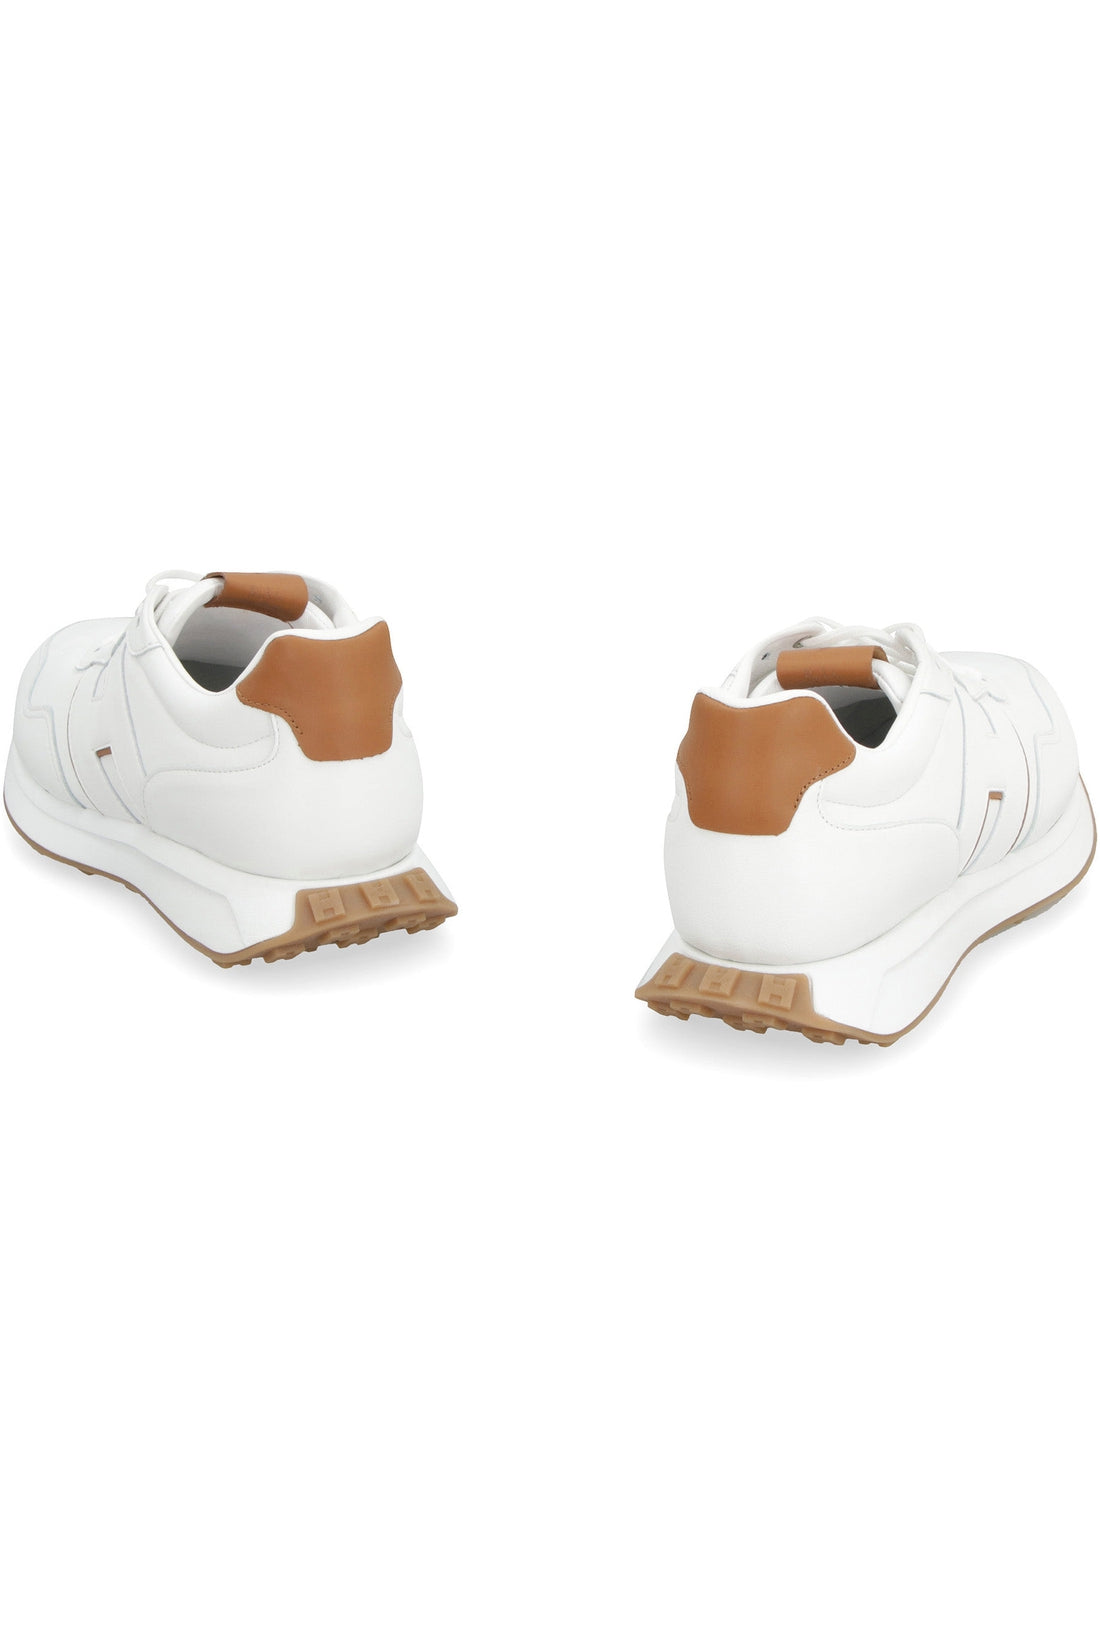 Hogan-OUTLET-SALE-Hogan H601 leather low-top sneakers-ARCHIVIST